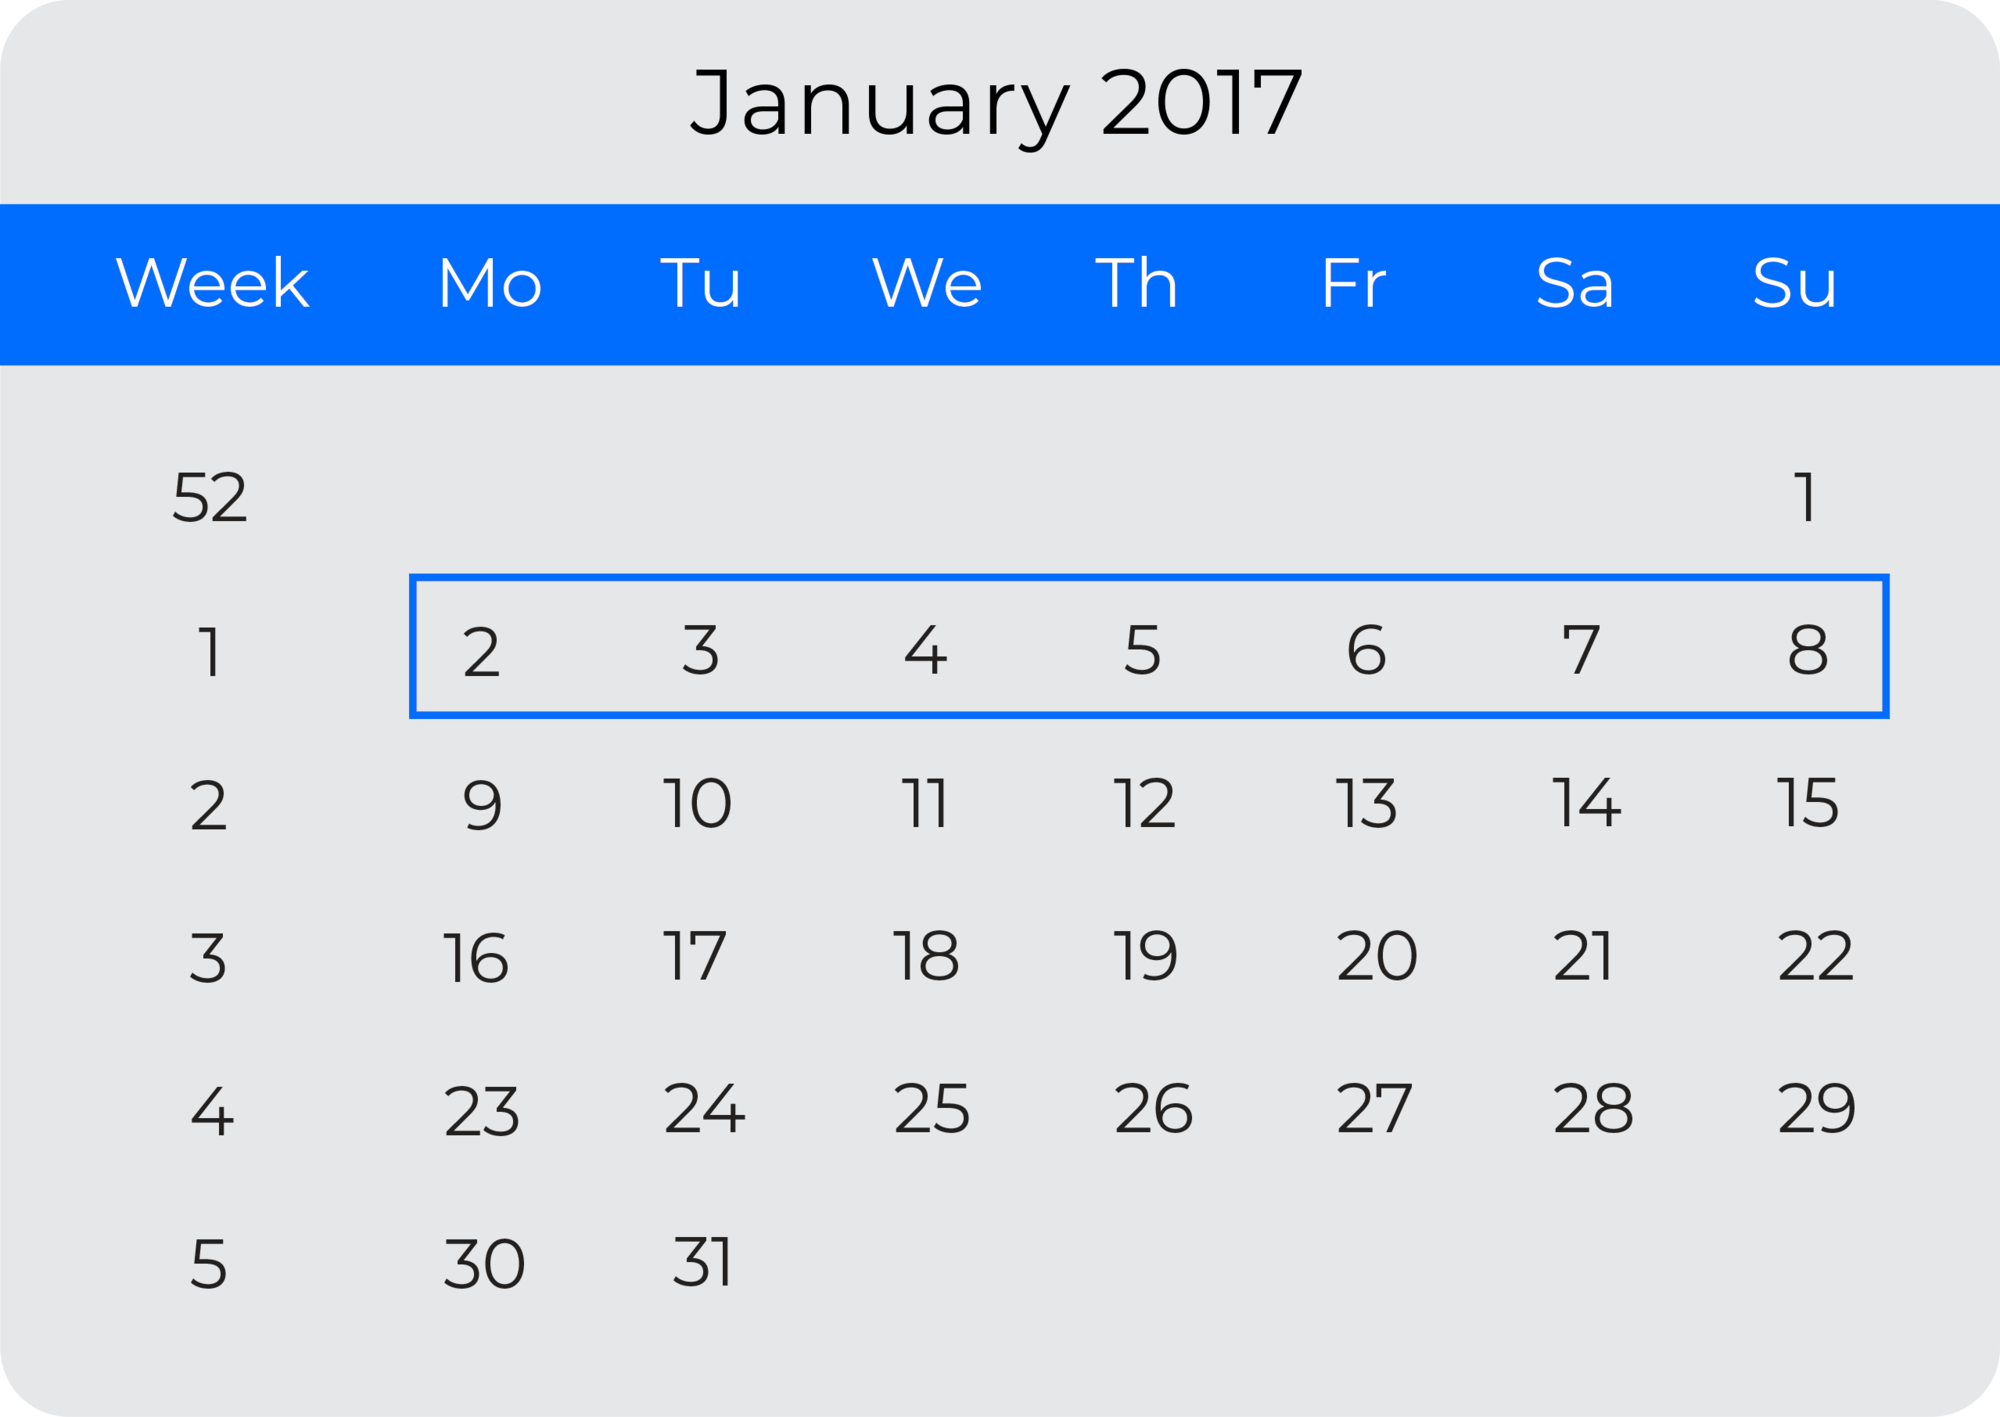 Três calendários representando diferentes DATEFIRSTs